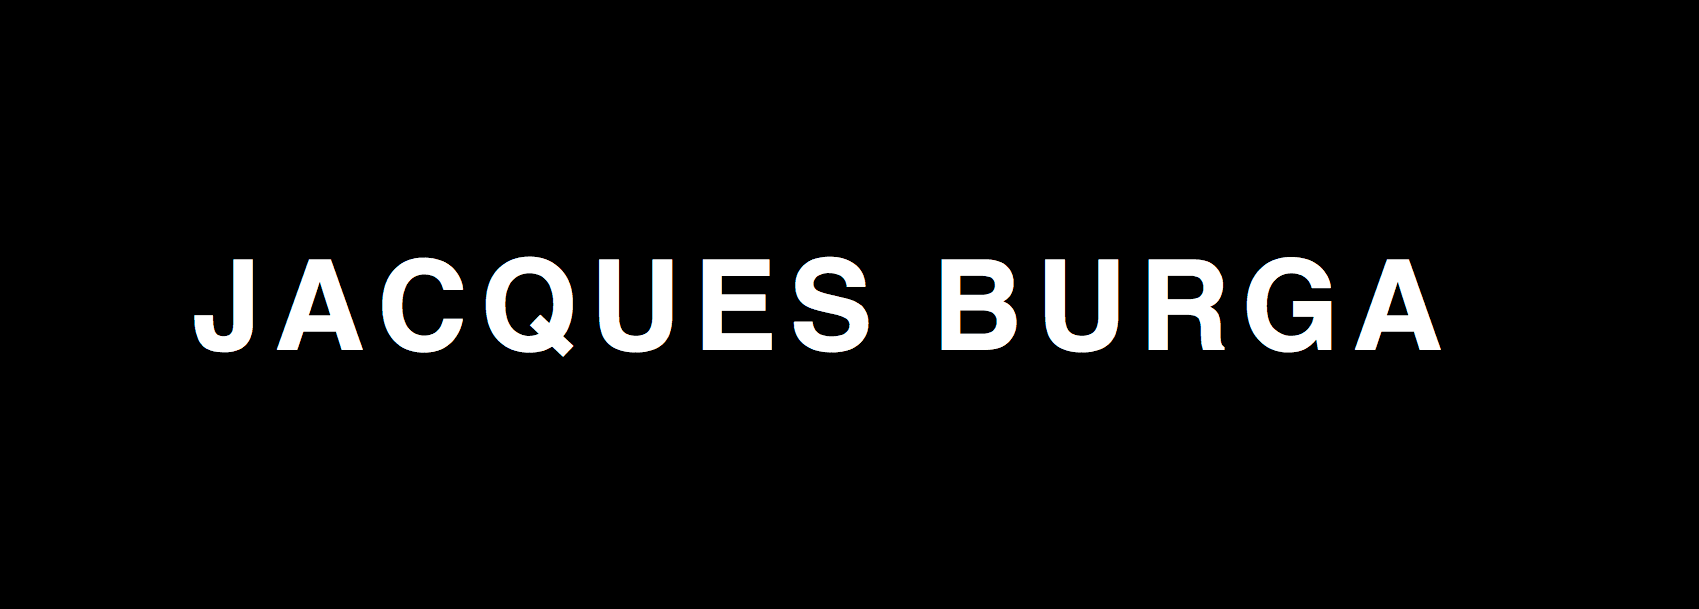 JacquesBurga bannière